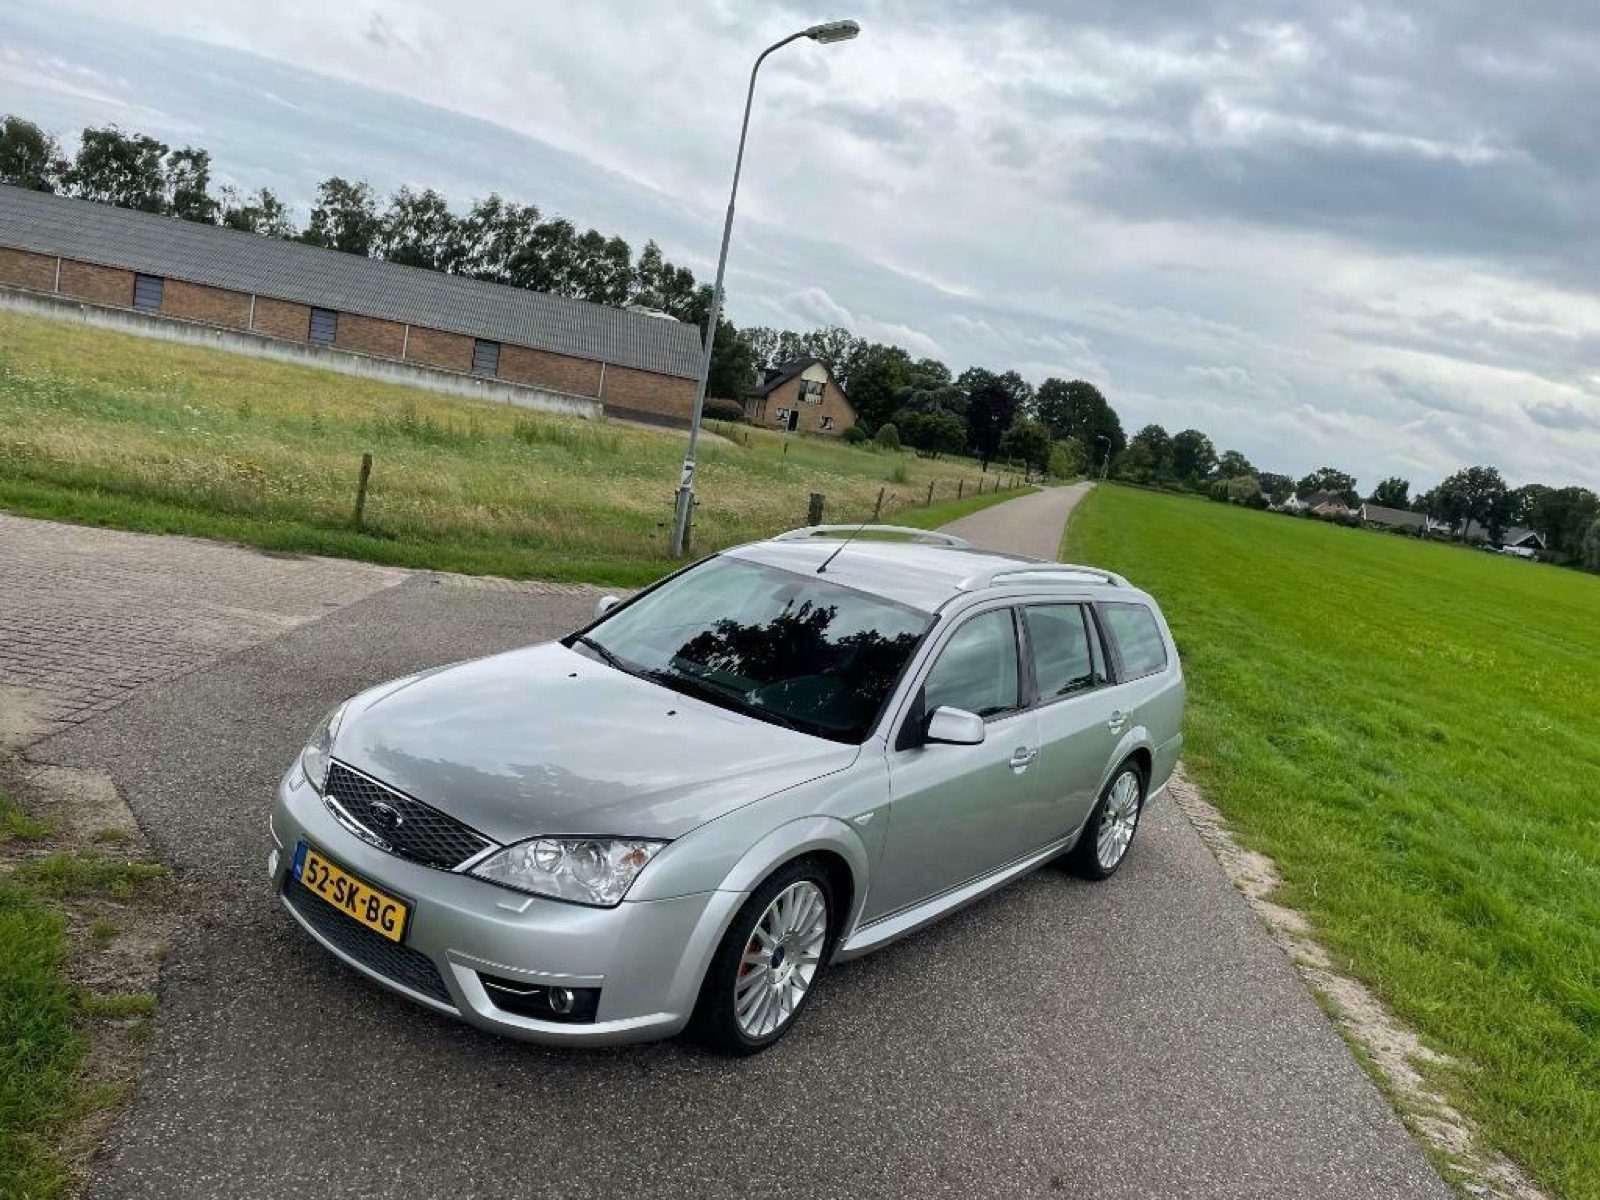 vertegenwoordiger Natura schommel Mondeo ST220 Wagon is ideale tweede auto - Autoblog.nl